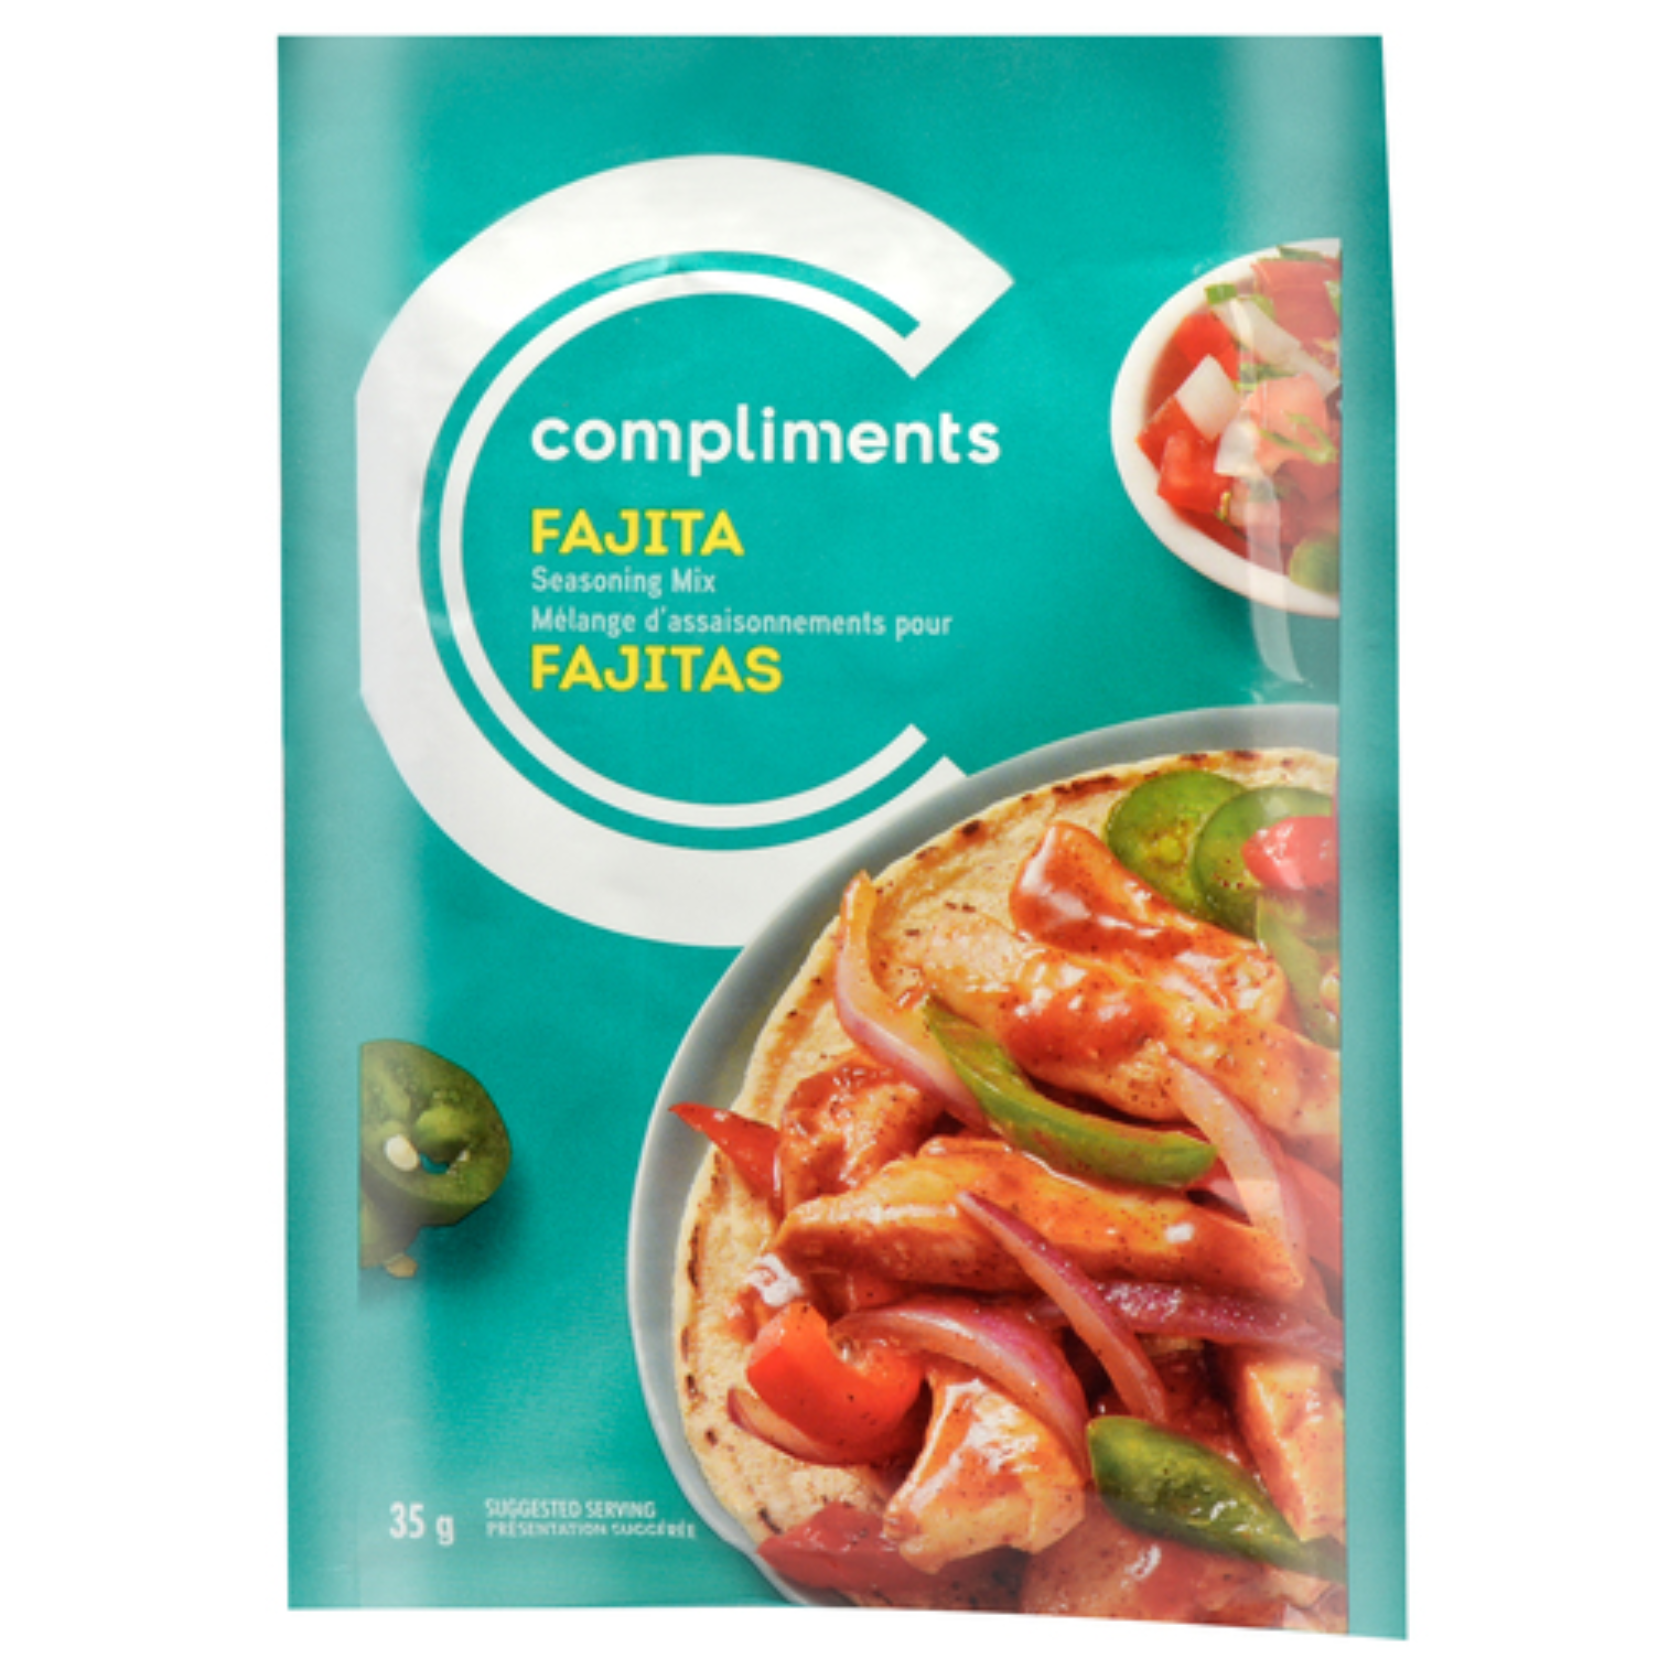 Compliments Fajita Seasoning Mix 35g